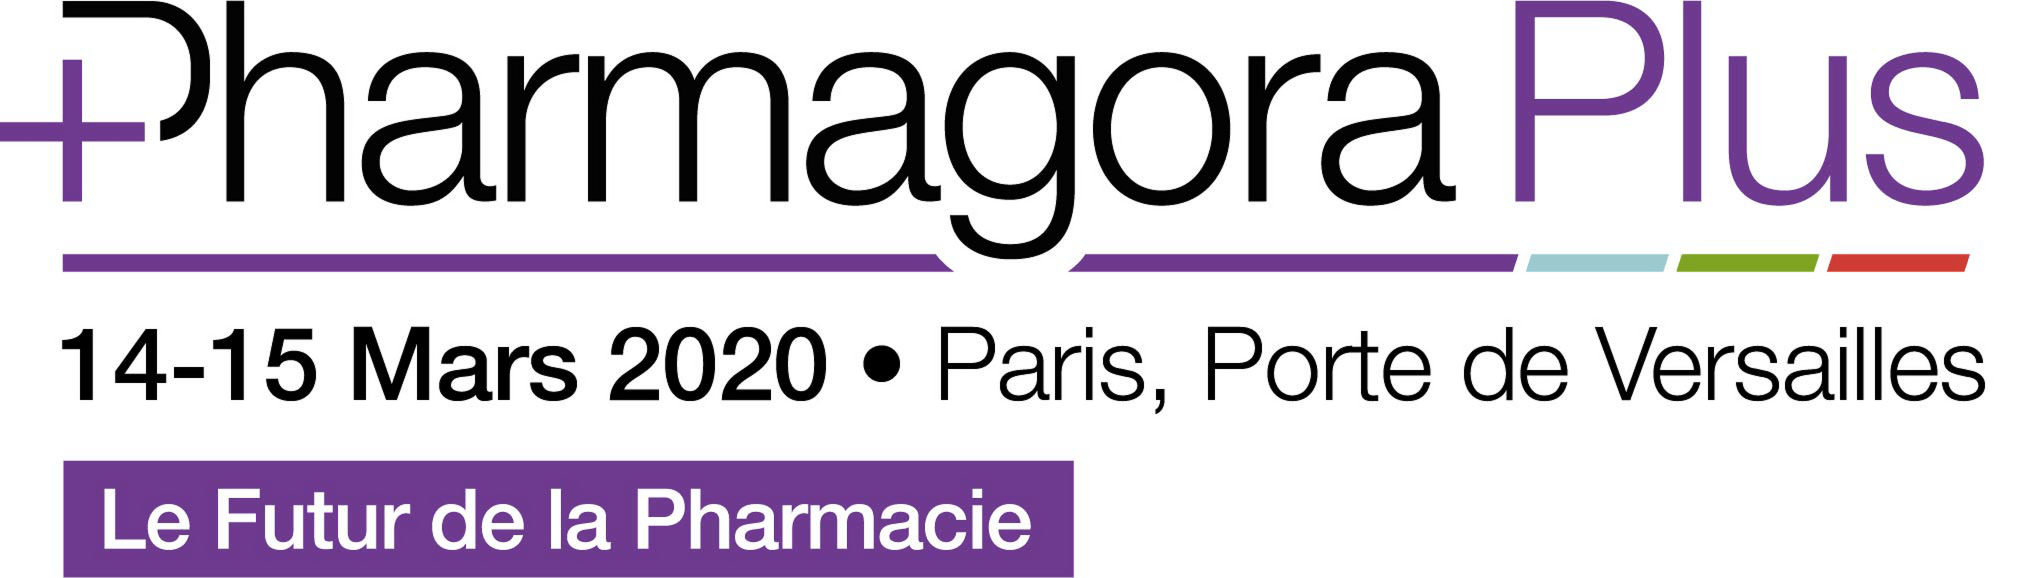 Pharmagora plus 2020